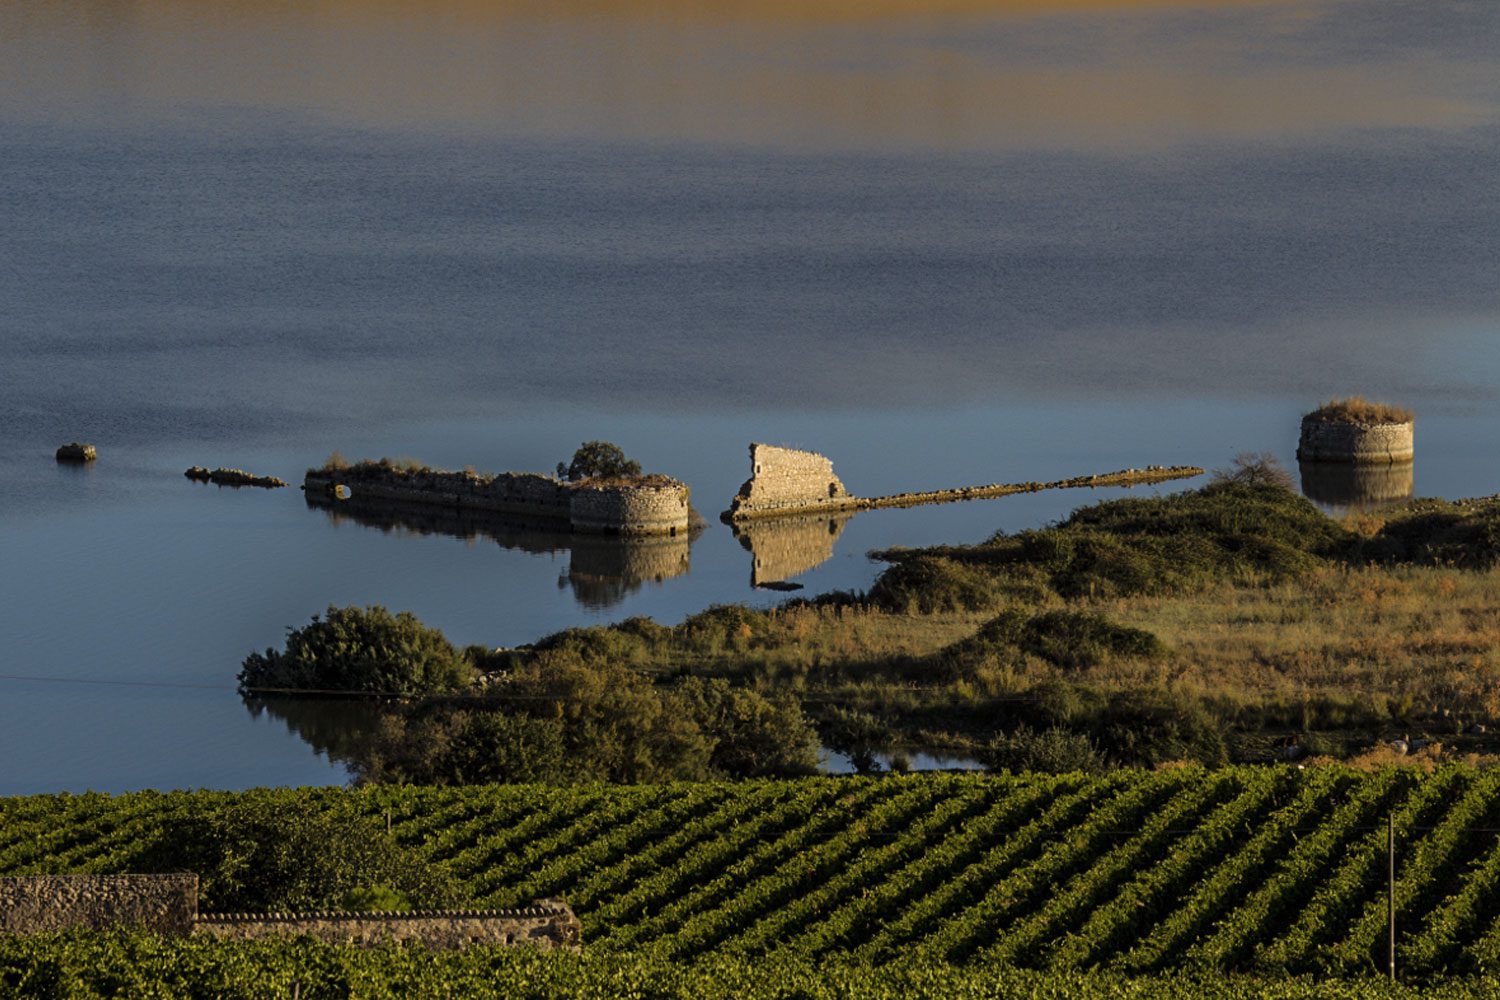 Le Regioni del vino: Sicilia